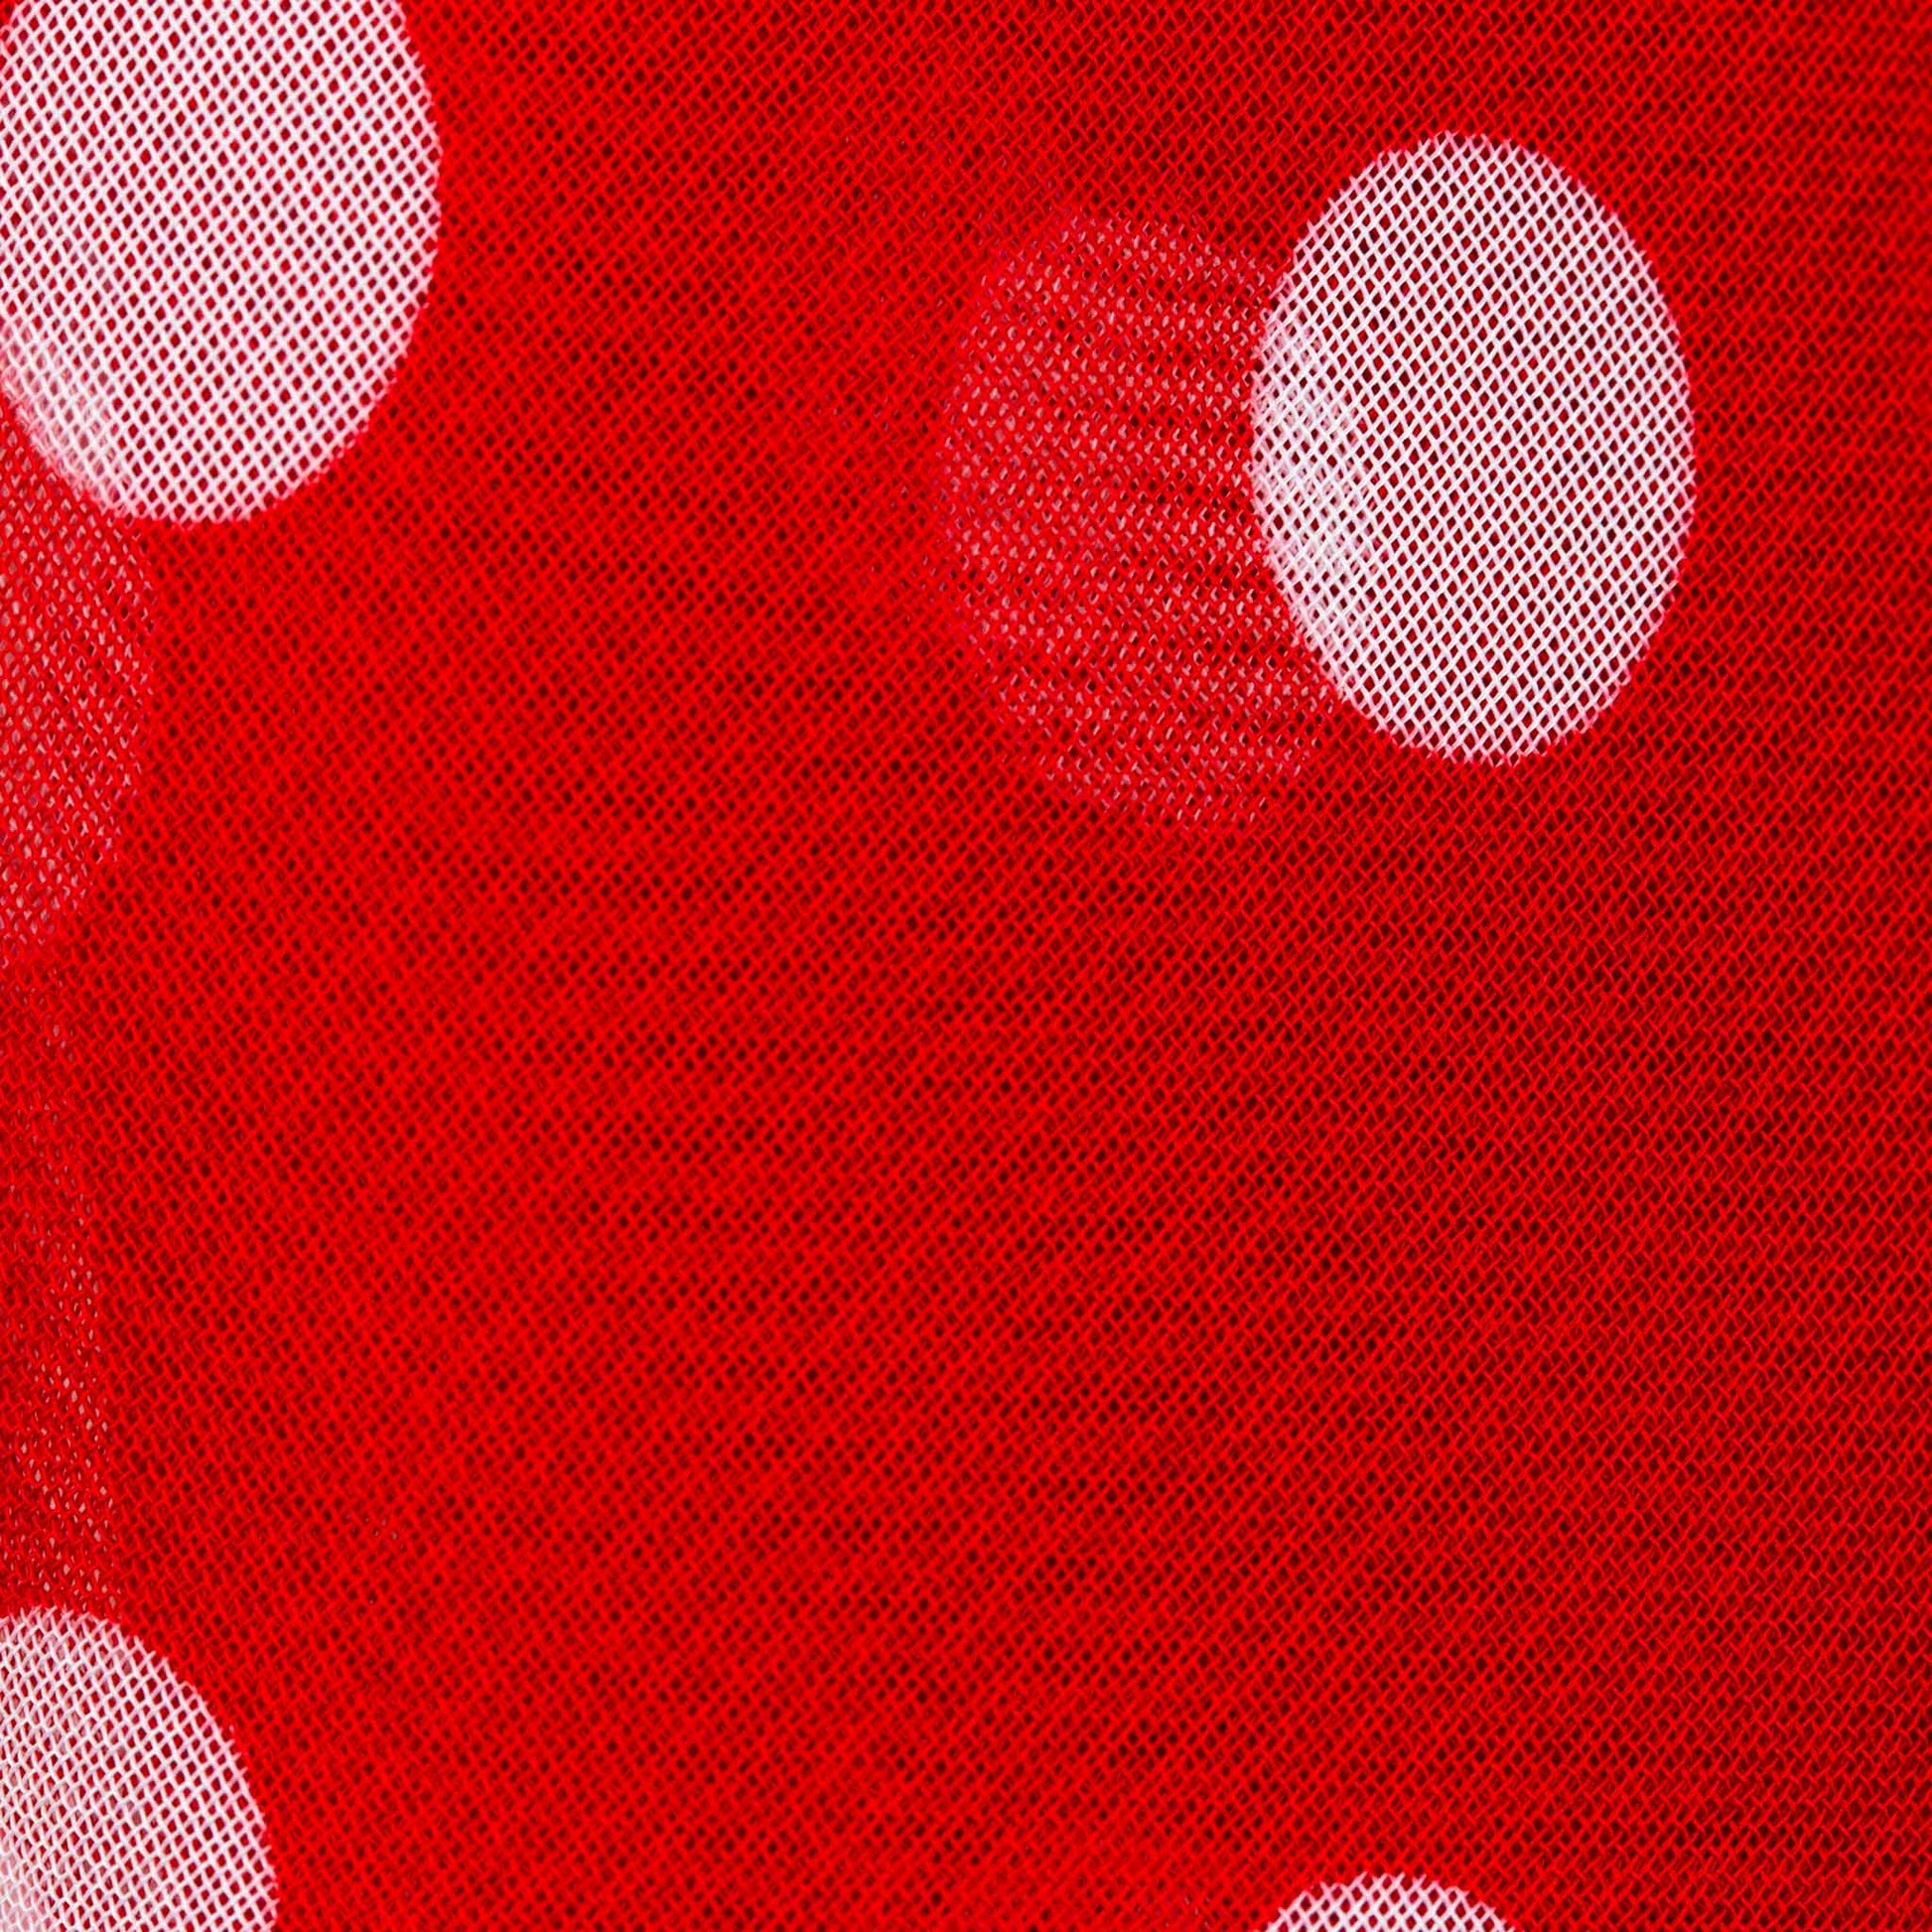 Eșarfă damă din mătase , imprimeu cu buline și dungi, 65 x 65 cm - Roșu